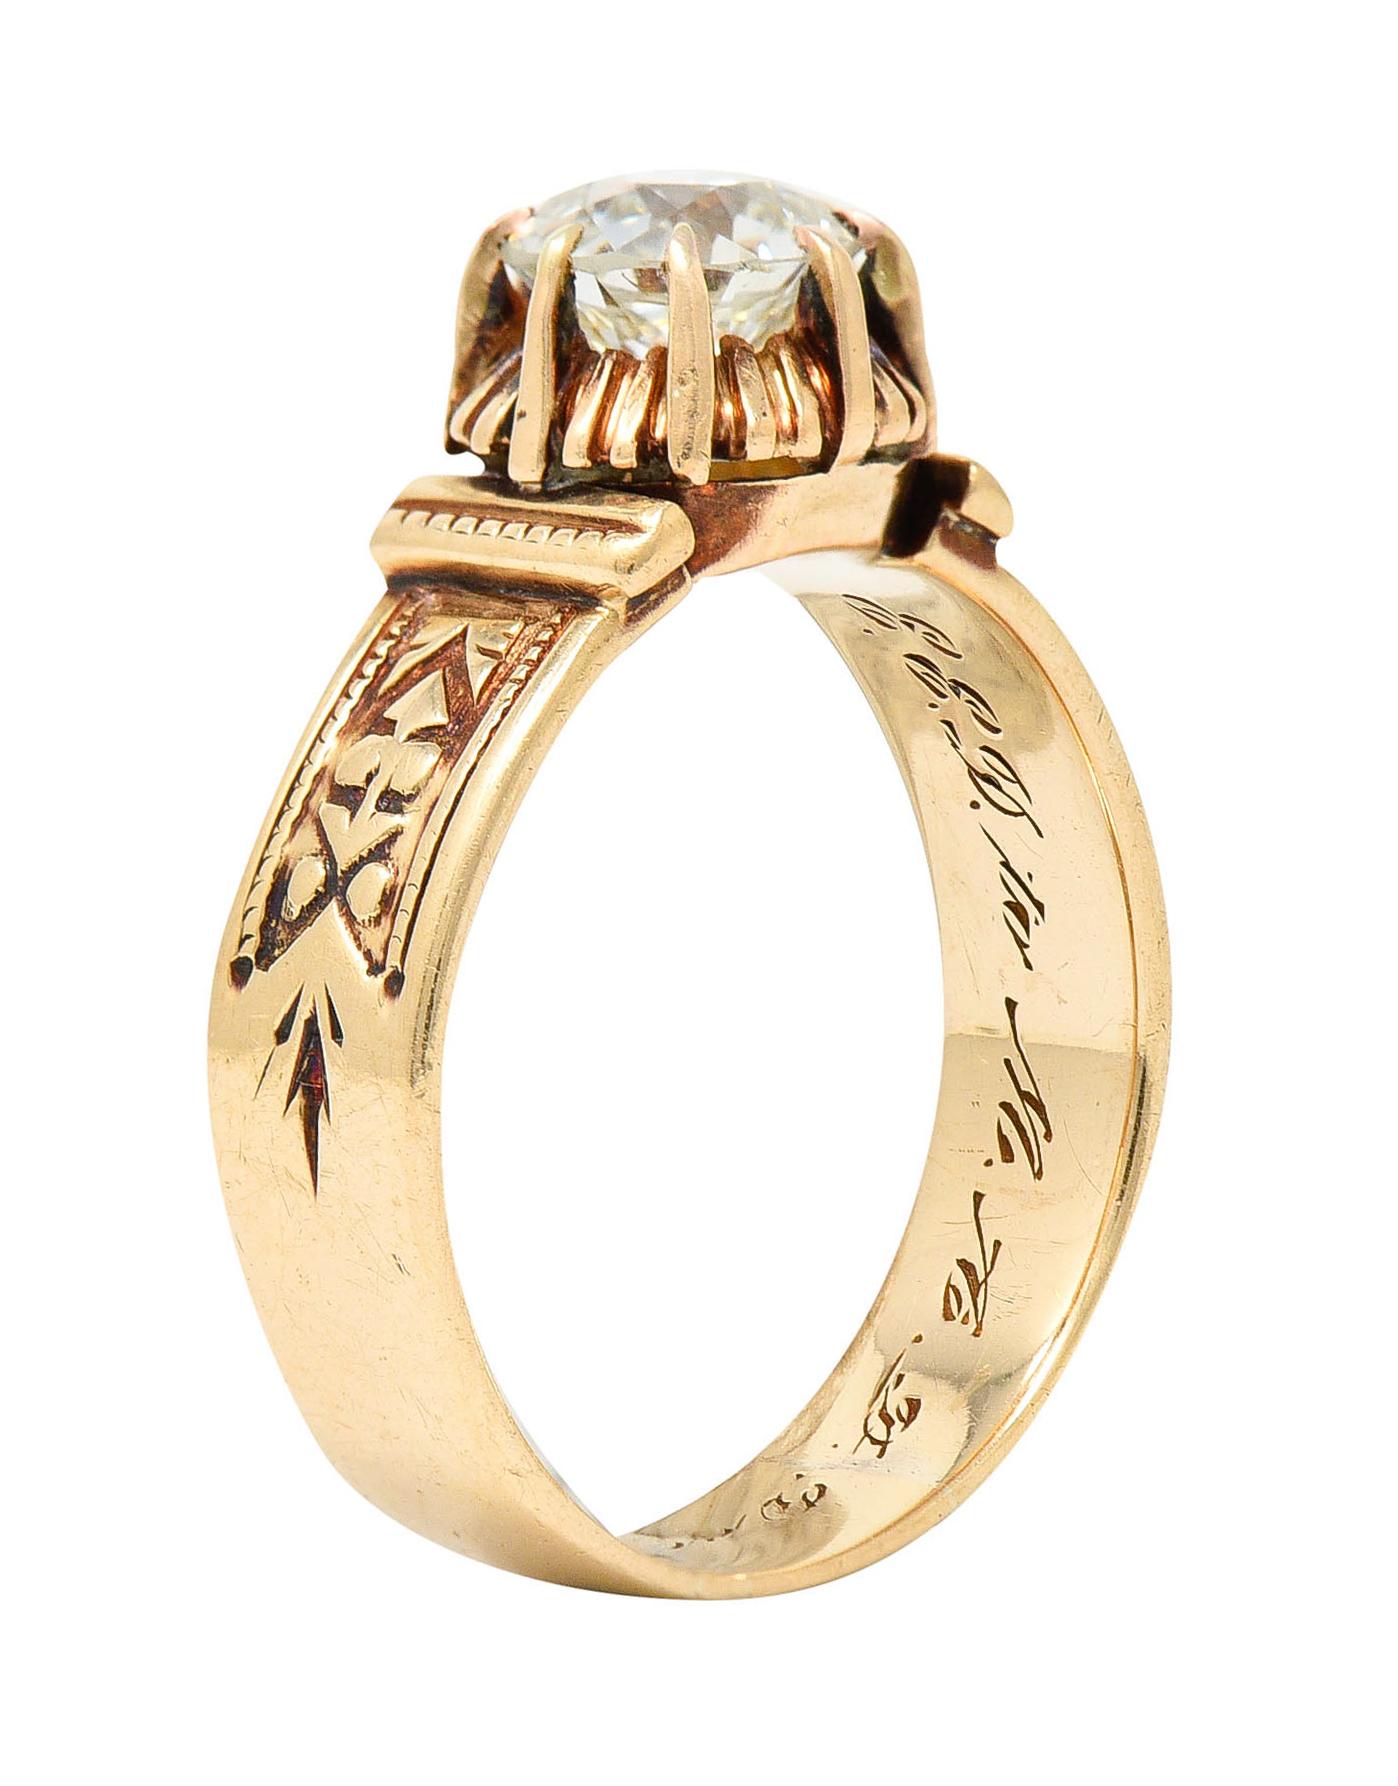 1904 Victorian 0.93 Carat Diamond 14 Karat Gold Engagement Ring GIA 6